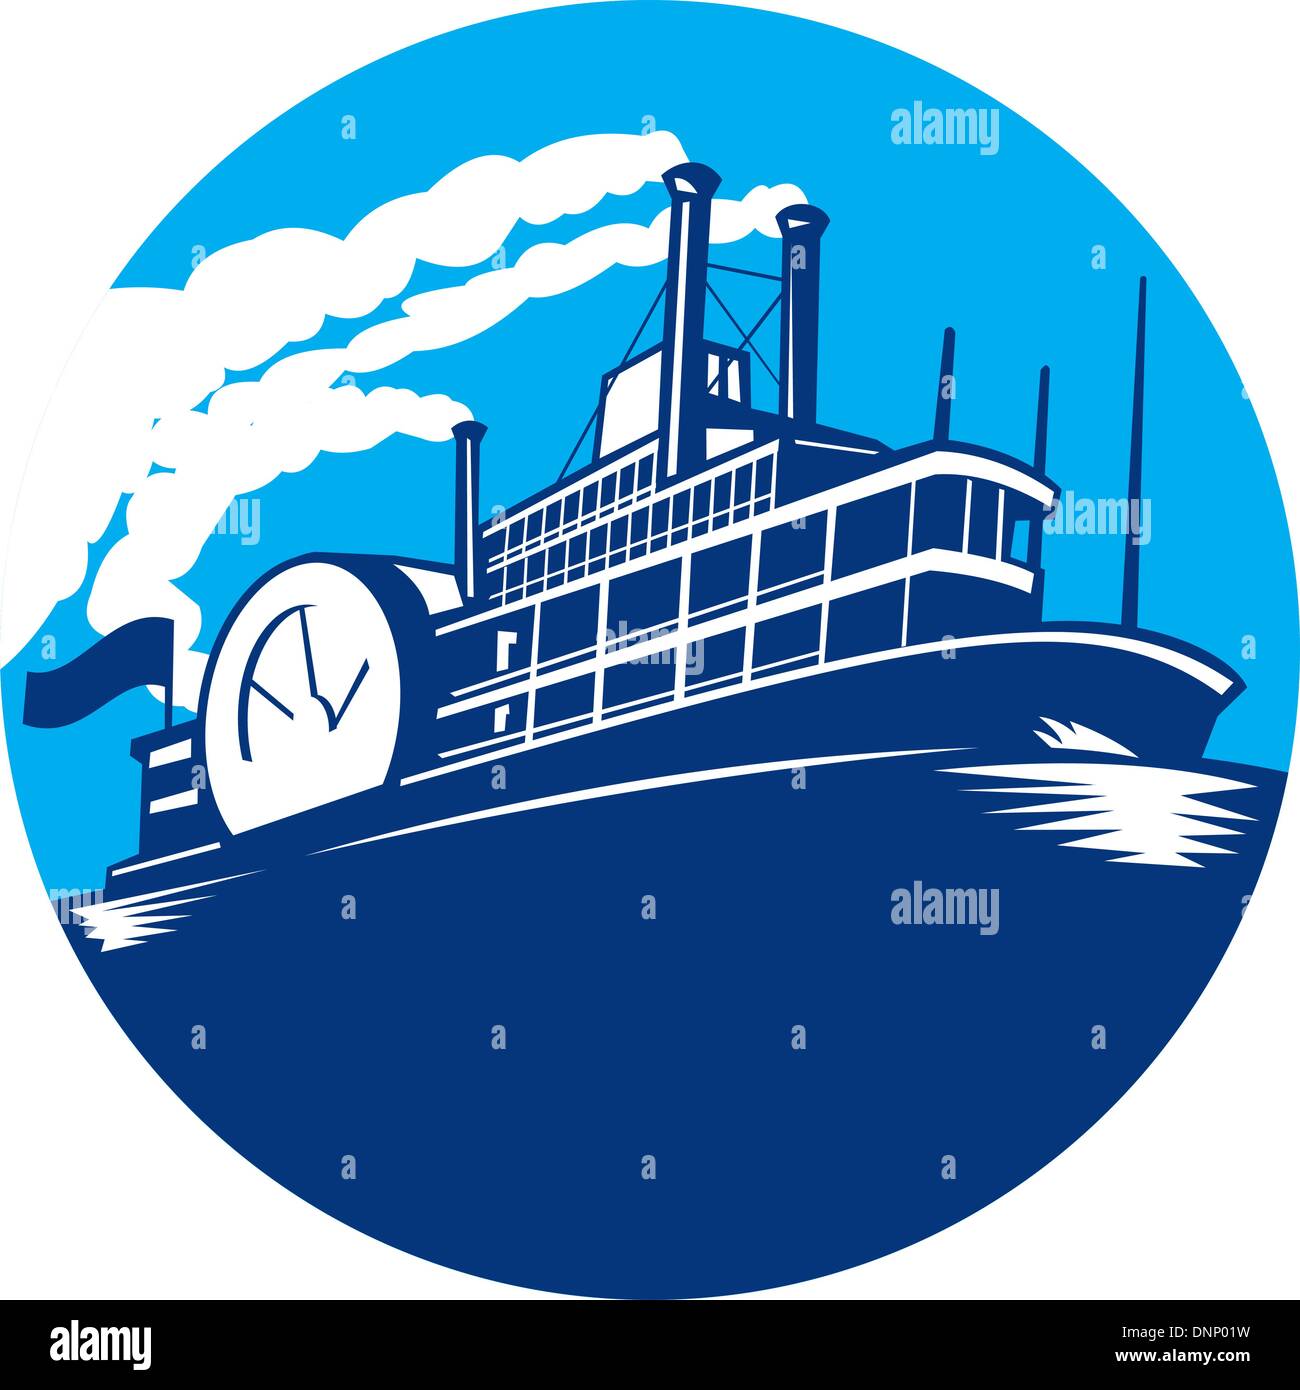 Illustration des Steamboat ferry Passagierschiff Schiff Segeln Satz im inneren Kreis im retro-Stil gemacht. Stock Vektor